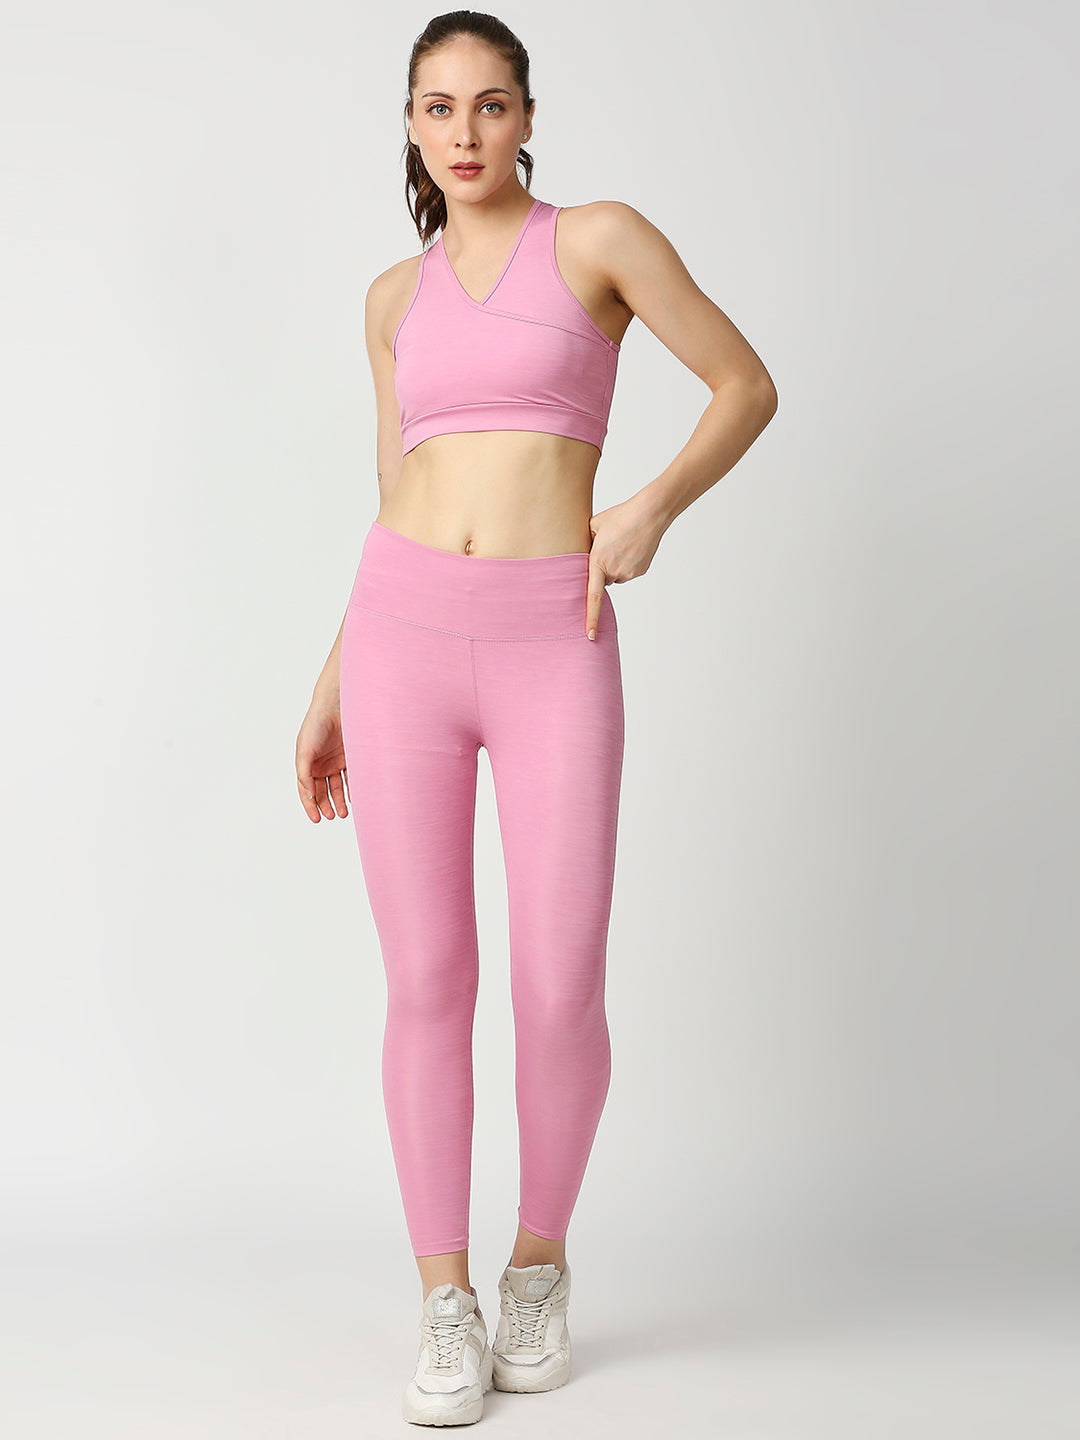 Buy Blamblack Women's Light Pink Color V-Neck GYM Wear Co-Ord's Set